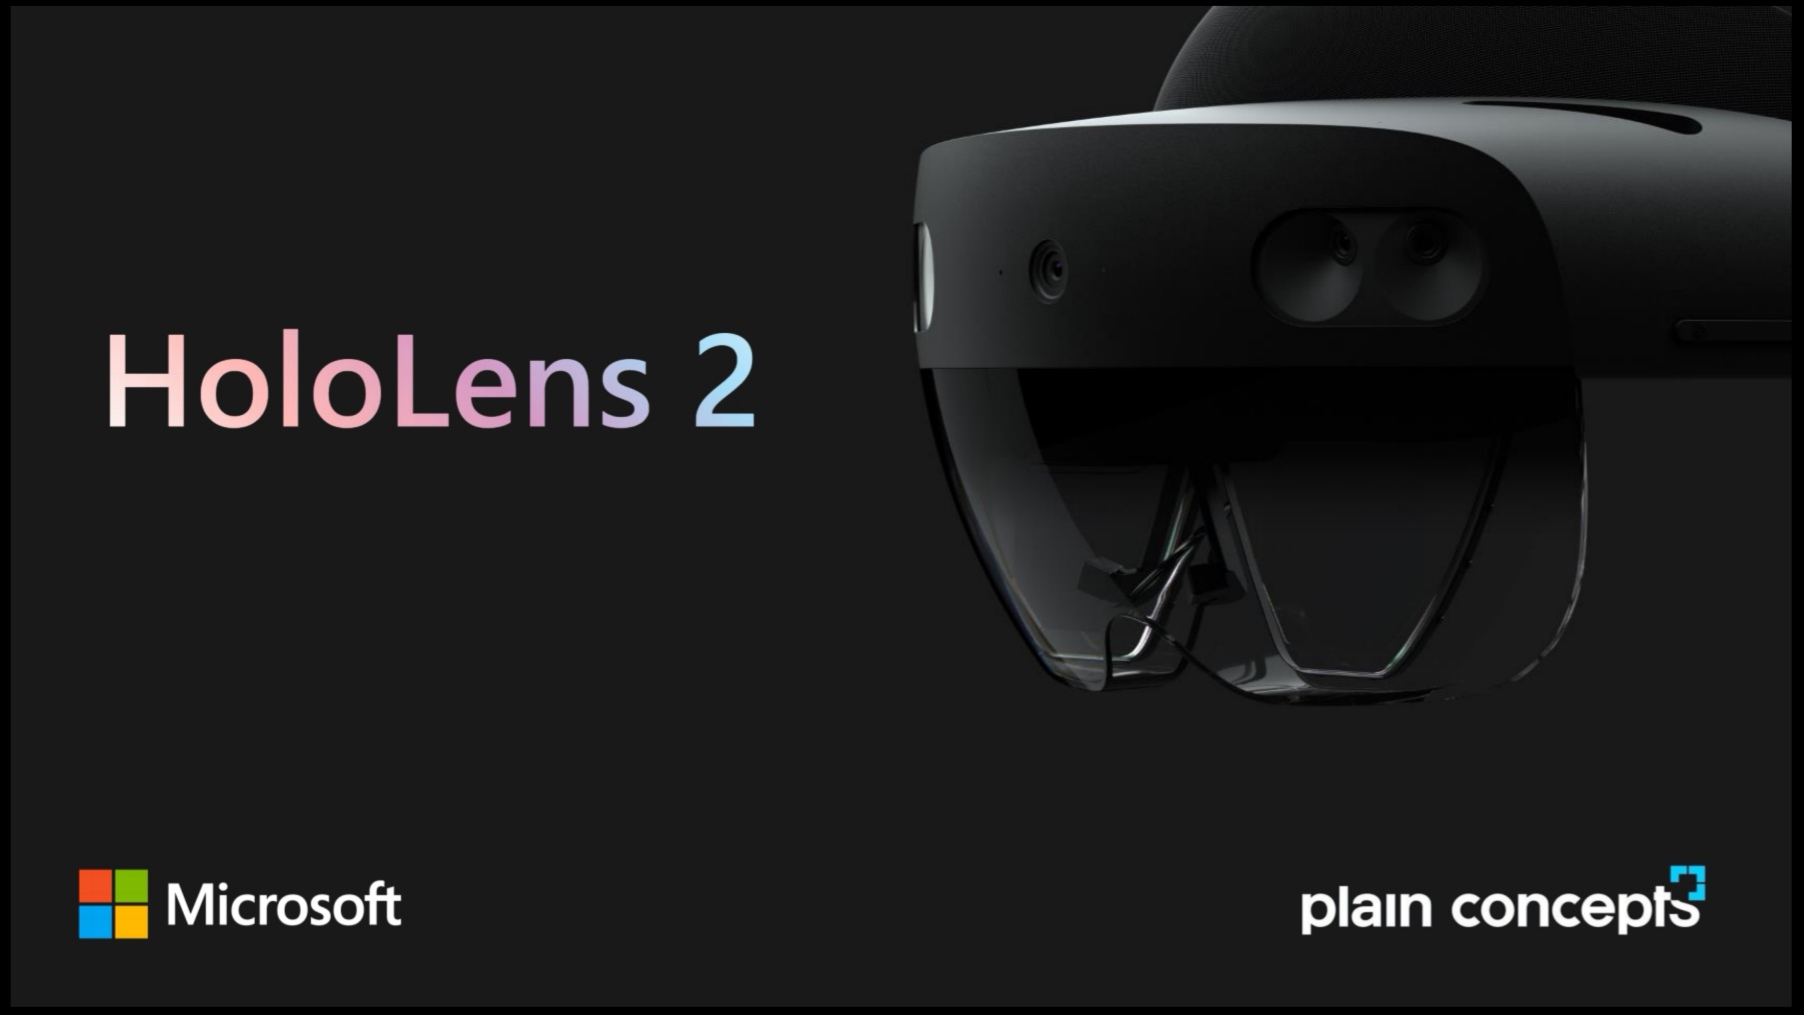 HoloLens 2 a la vanguardia del sector profesional